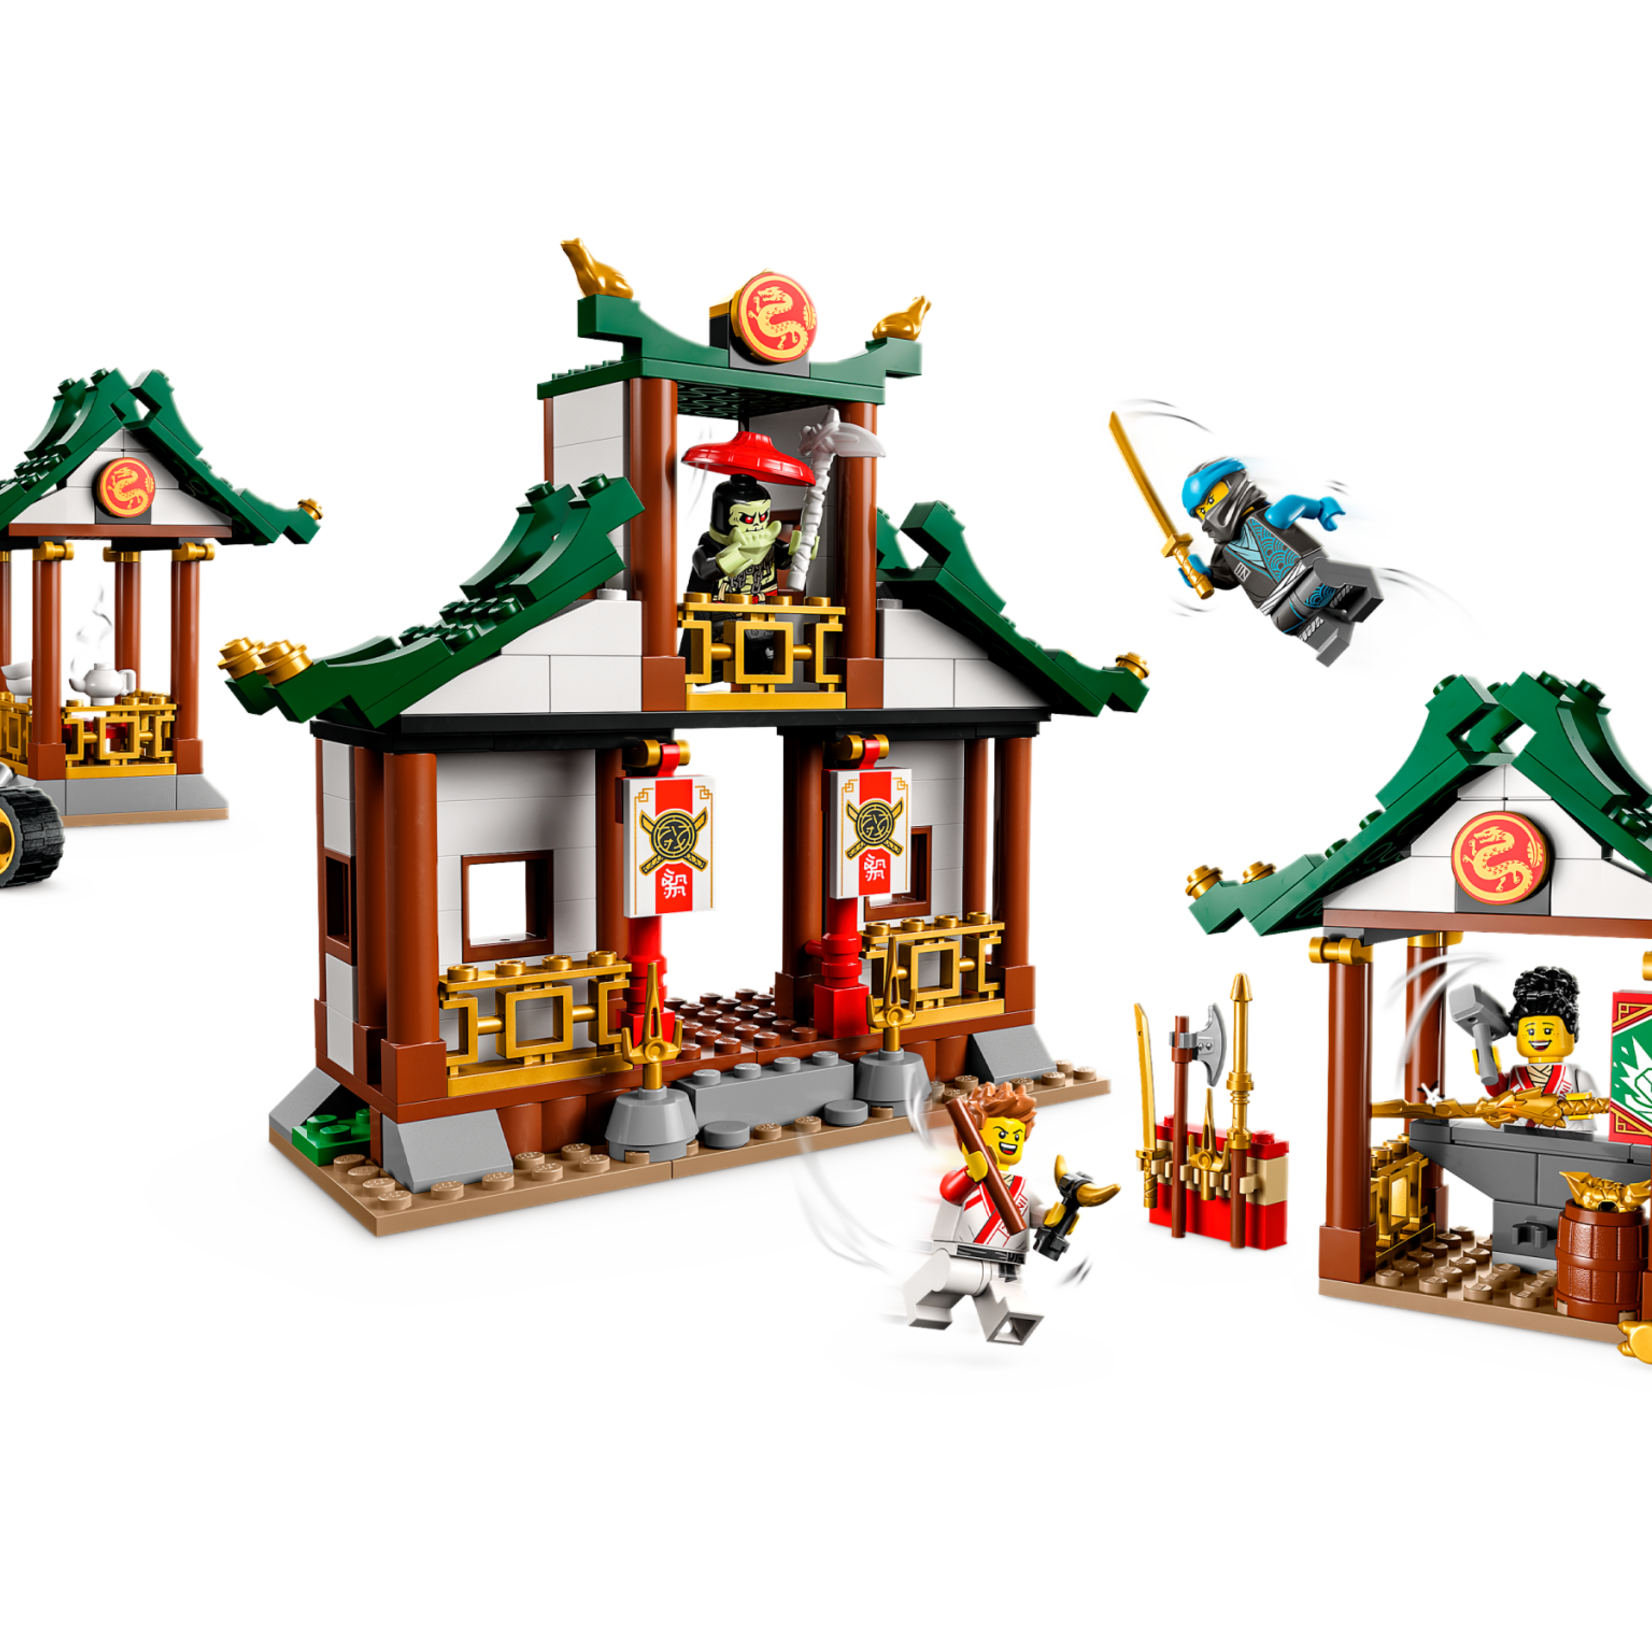 Lego Lego 71787 Ninjago - Boîte de briques créative Ninja